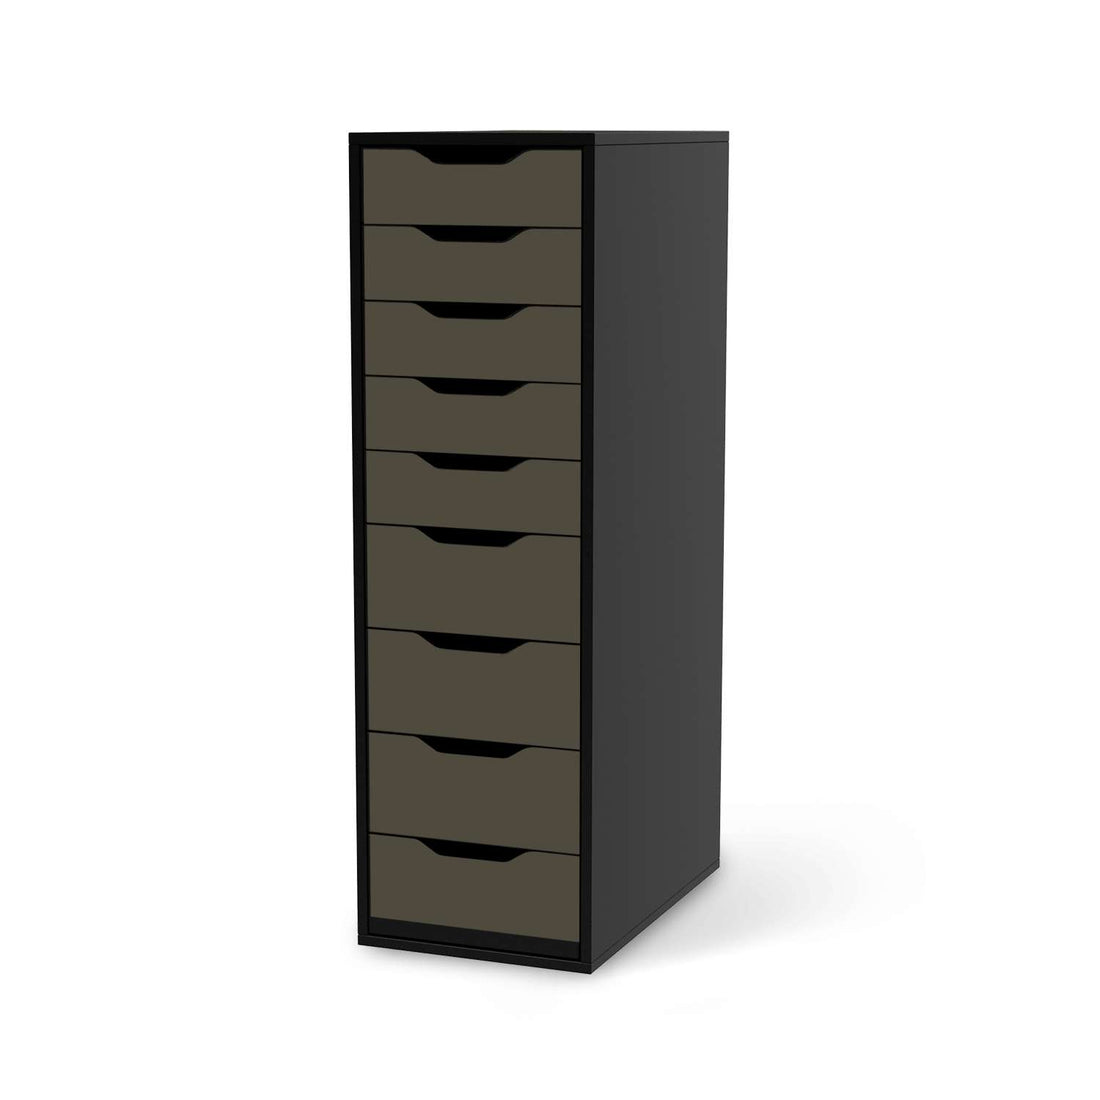 Folie für Möbel Braungrau Dark - IKEA Alex 9 Schubladen - schwarz